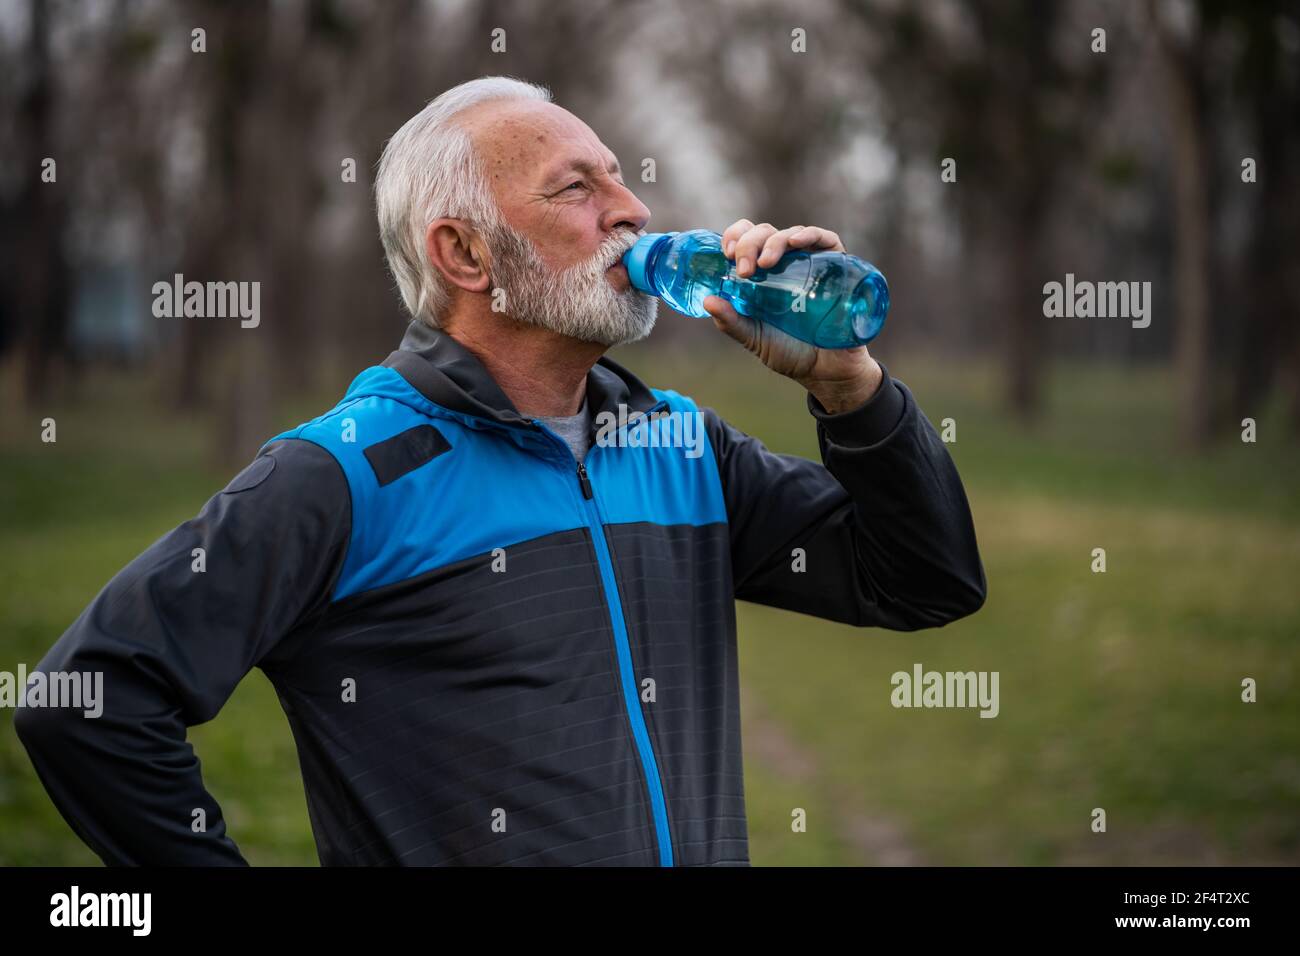 Der ältere Mann trinkt Wasser, nachdem er im Park trainiert hat. Stockfoto